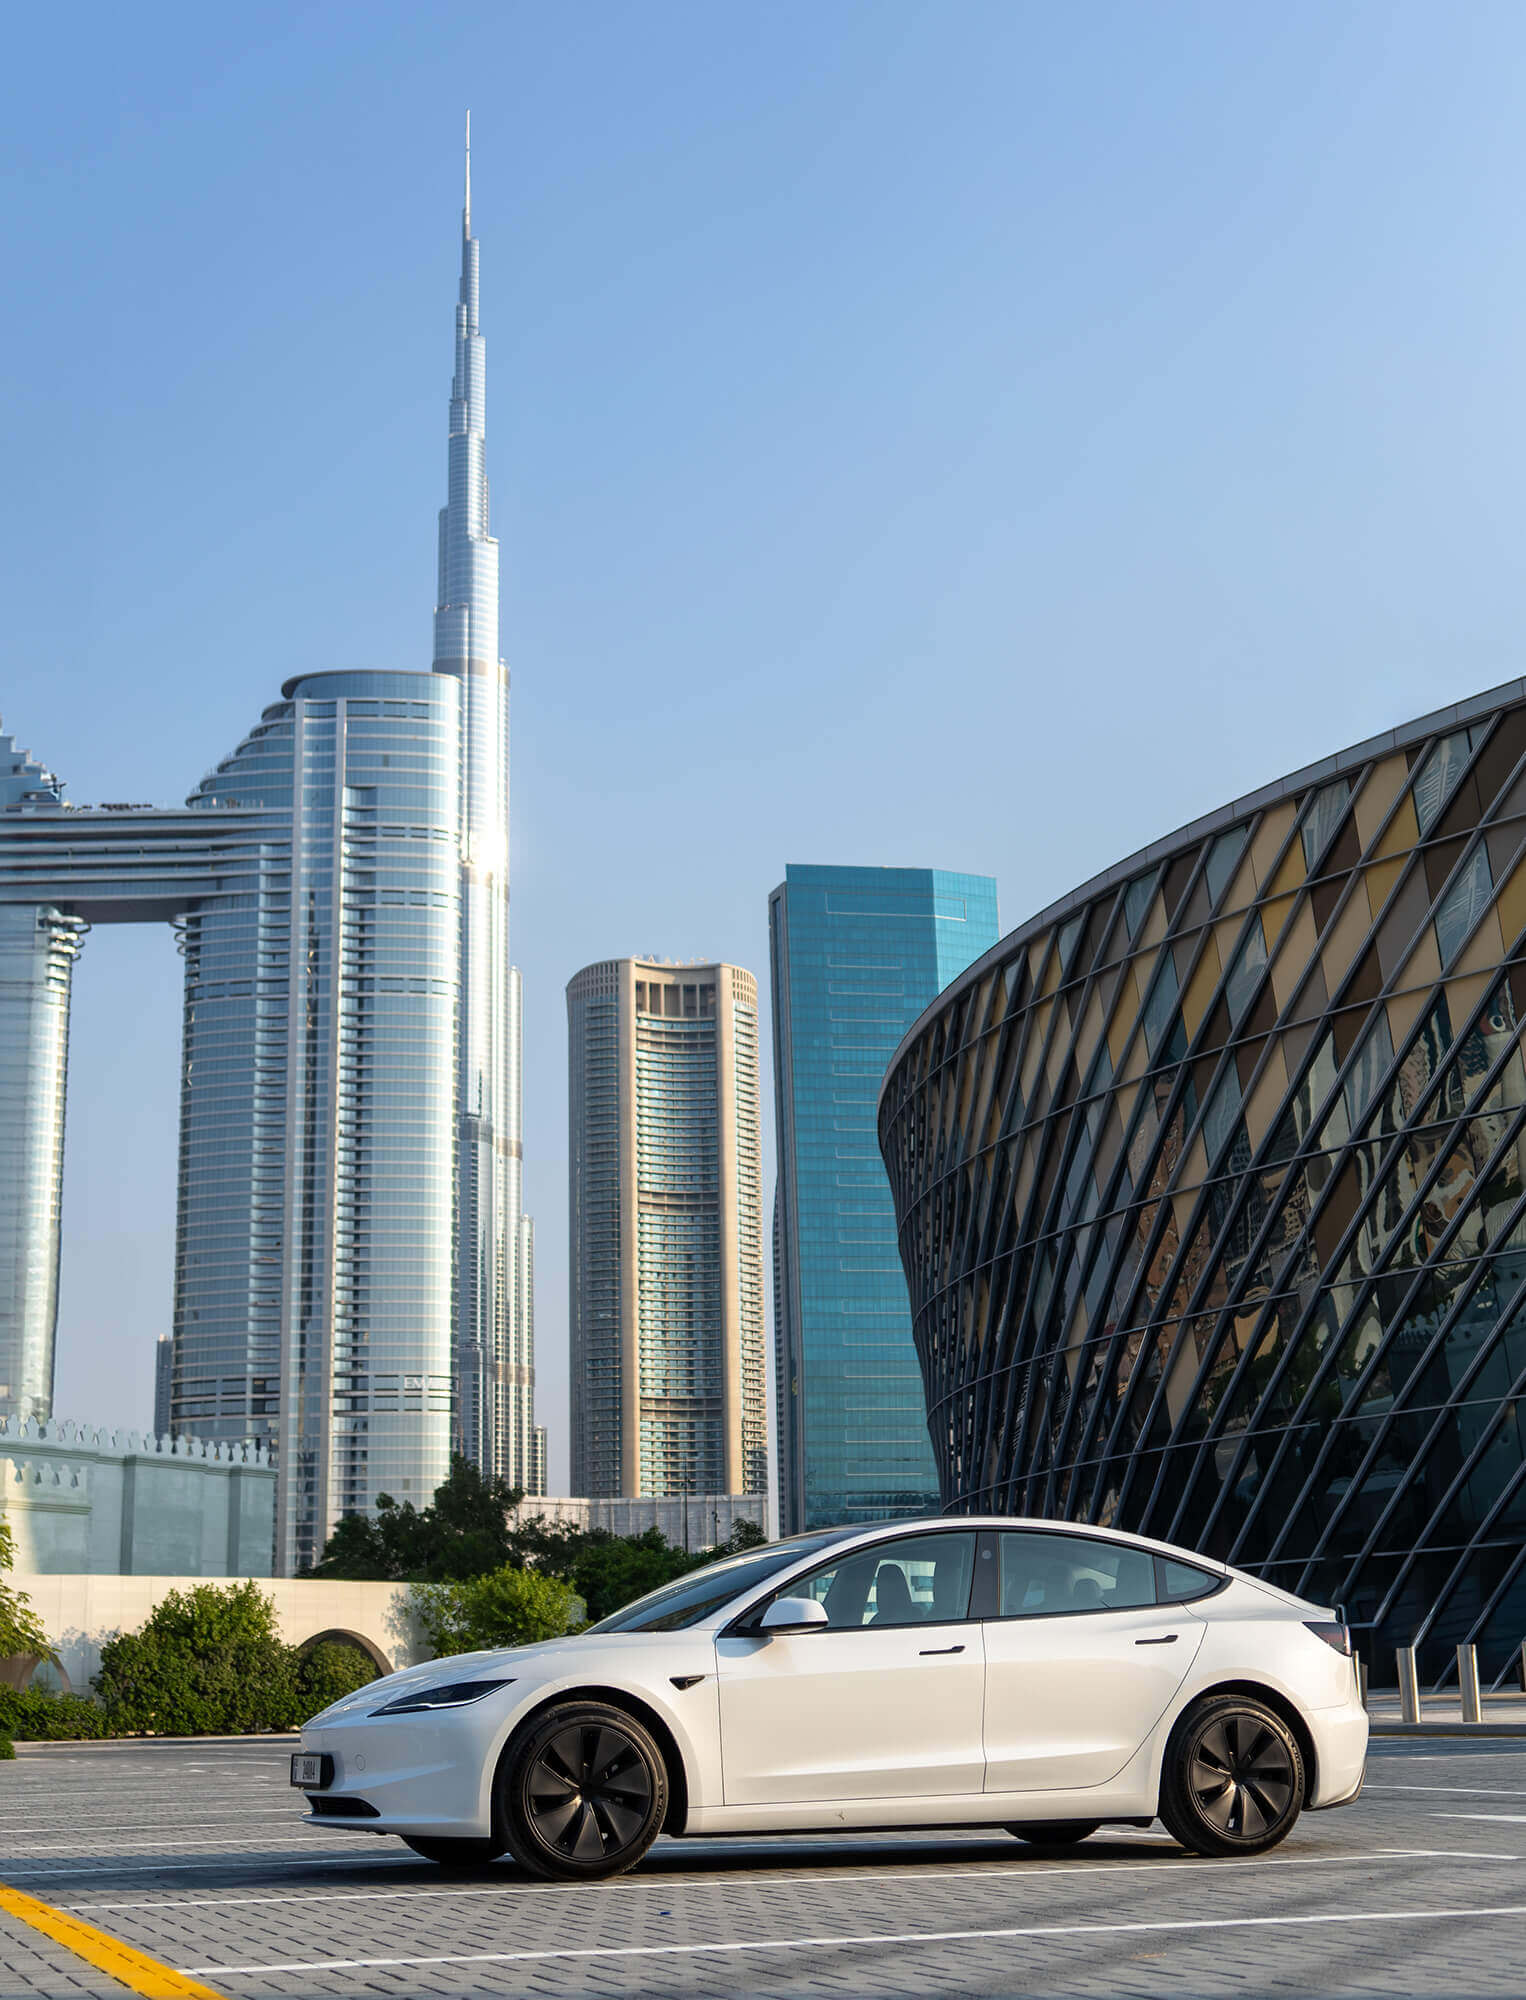 Lej en Tesla Model X i Dubai